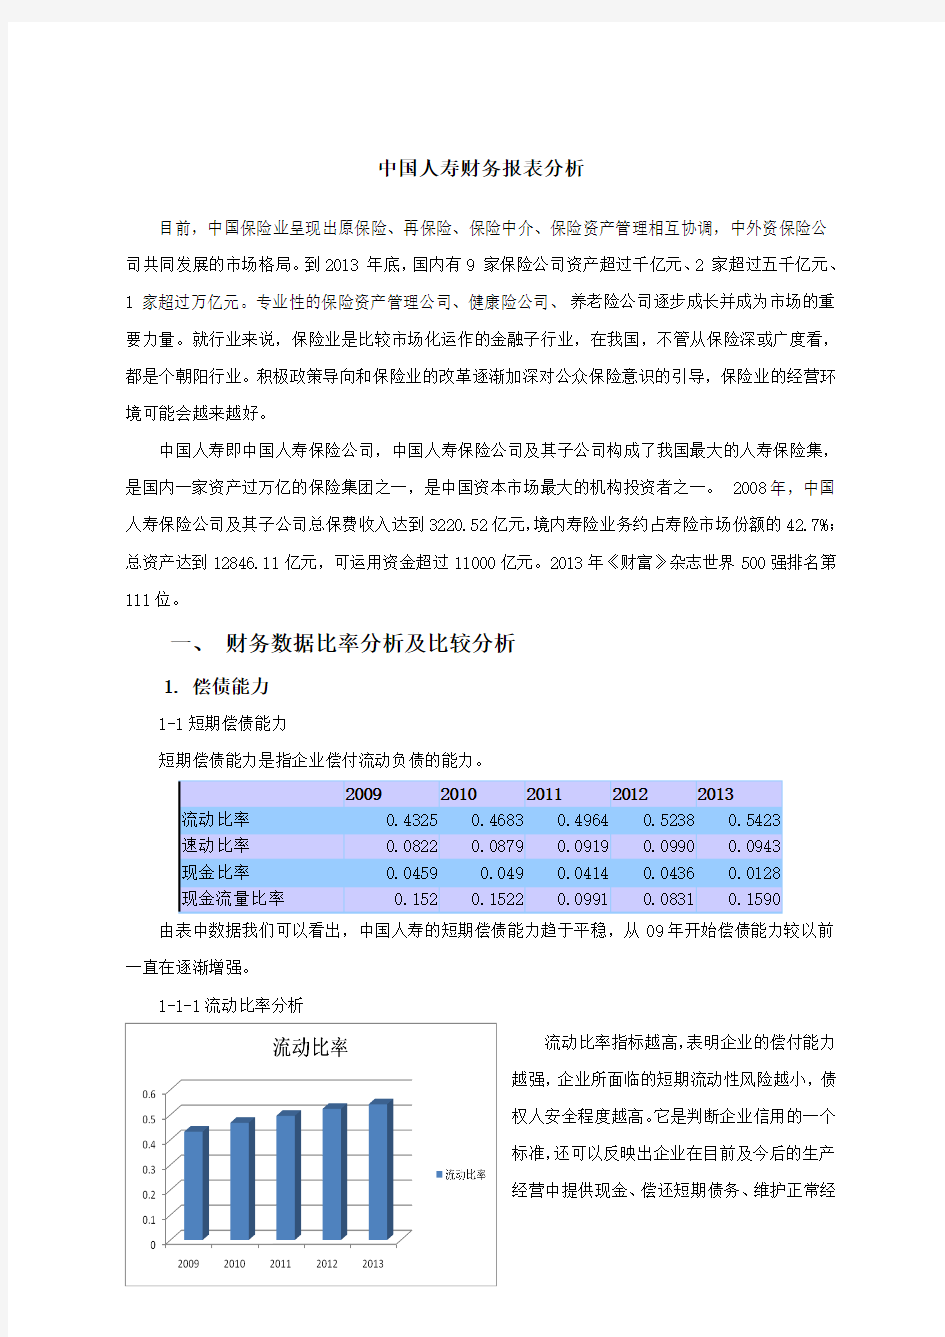 中国人寿 财务报表分析(9-13年)